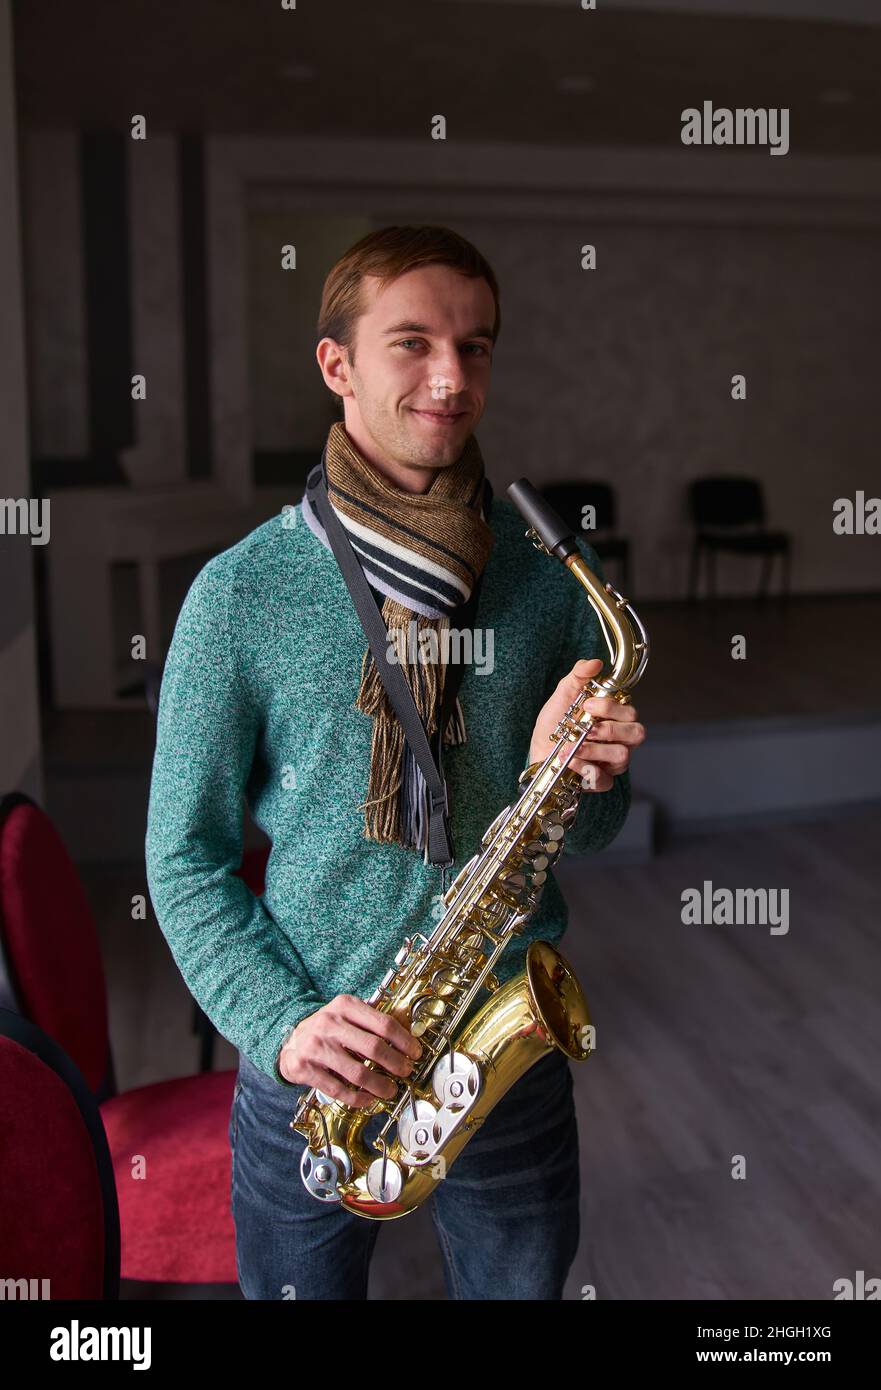 Jeune artiste de musique jazzman tenant un saxophone dans ses mains.La salle sombre de la salle de concert, éclairée par la lumière de la fenêtre Banque D'Images